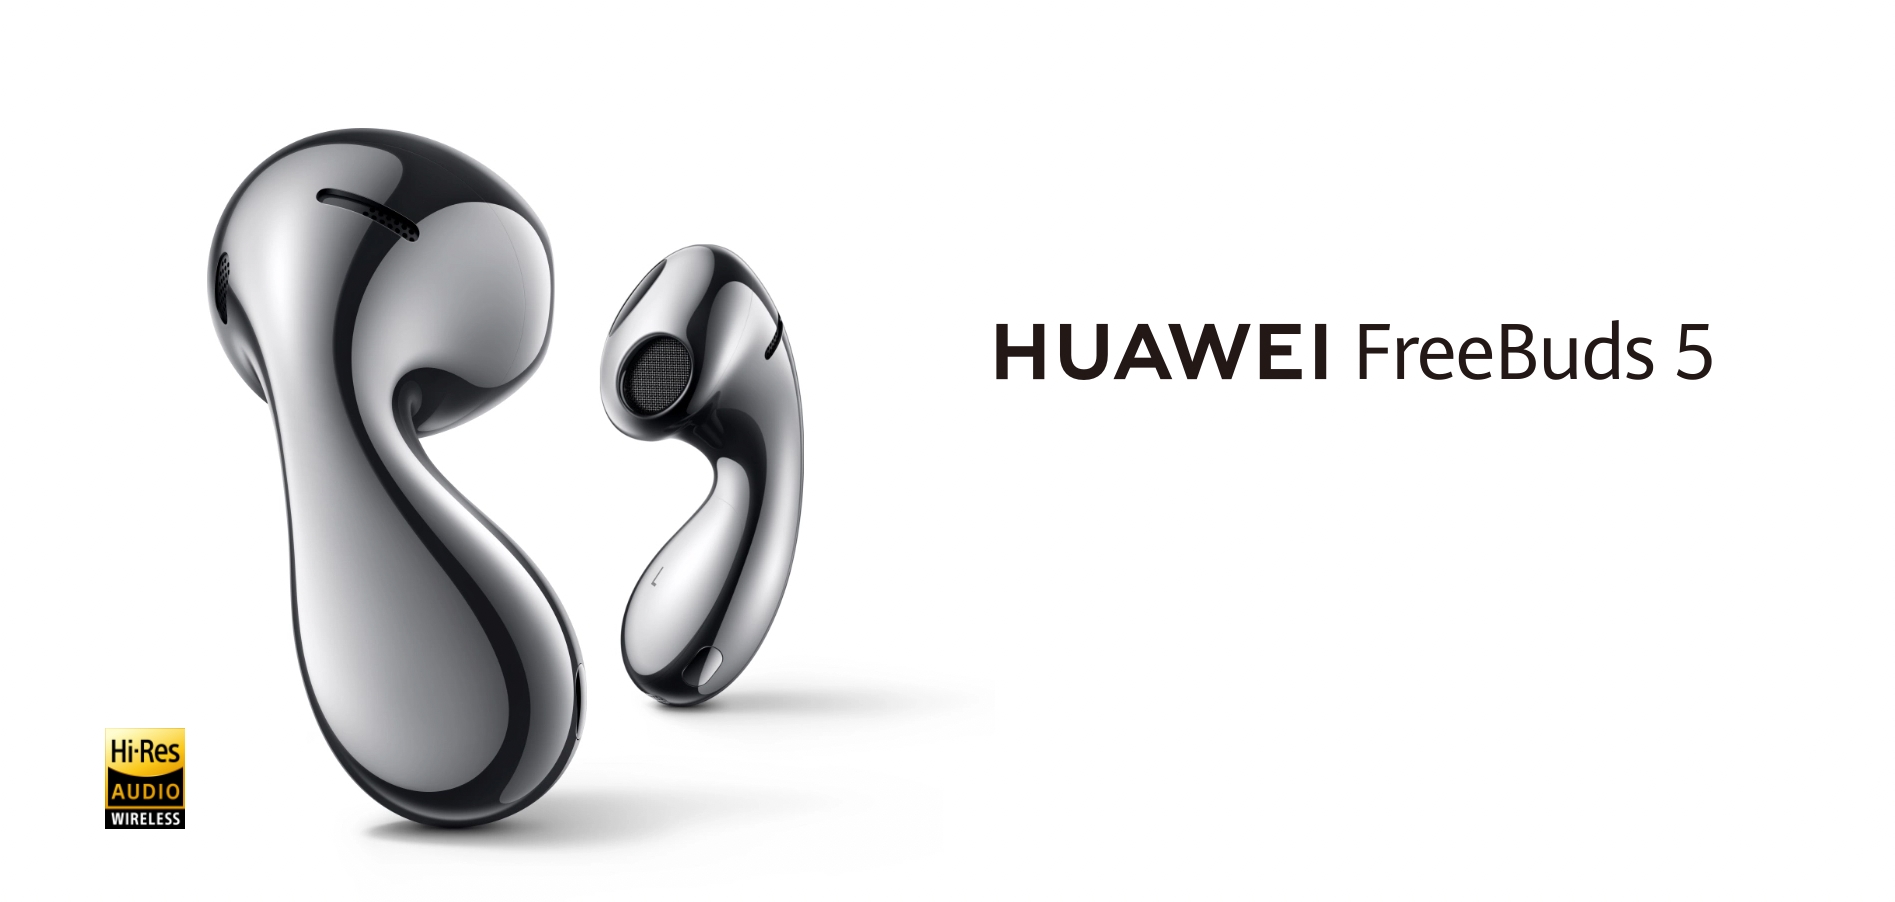 Die Huawei FreeBuds 5 kommen nach Europa: TWS-Kopfhörer mit ungewöhnlichem Design und Hybrid-AnC für 159 Euro